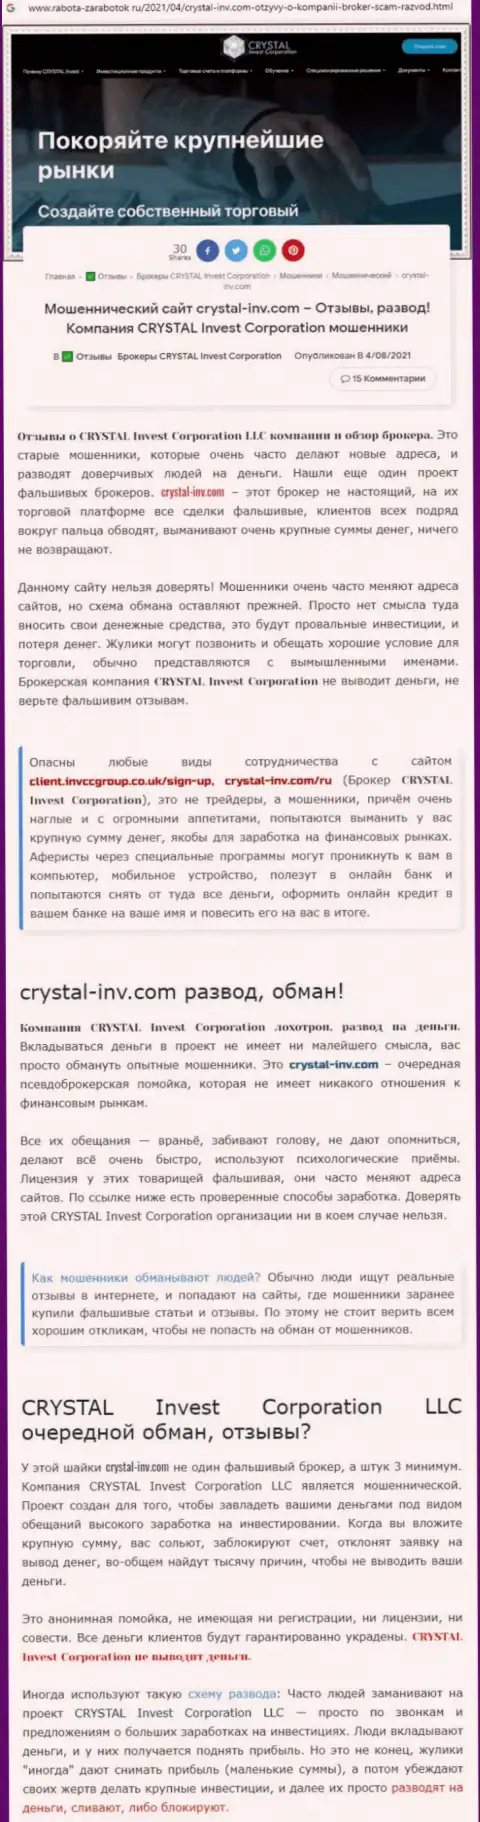 Материал, разоблачающий организацию CrystalInvest, позаимствованный с онлайн-сервиса с обзорами противозаконных действий различных компаний